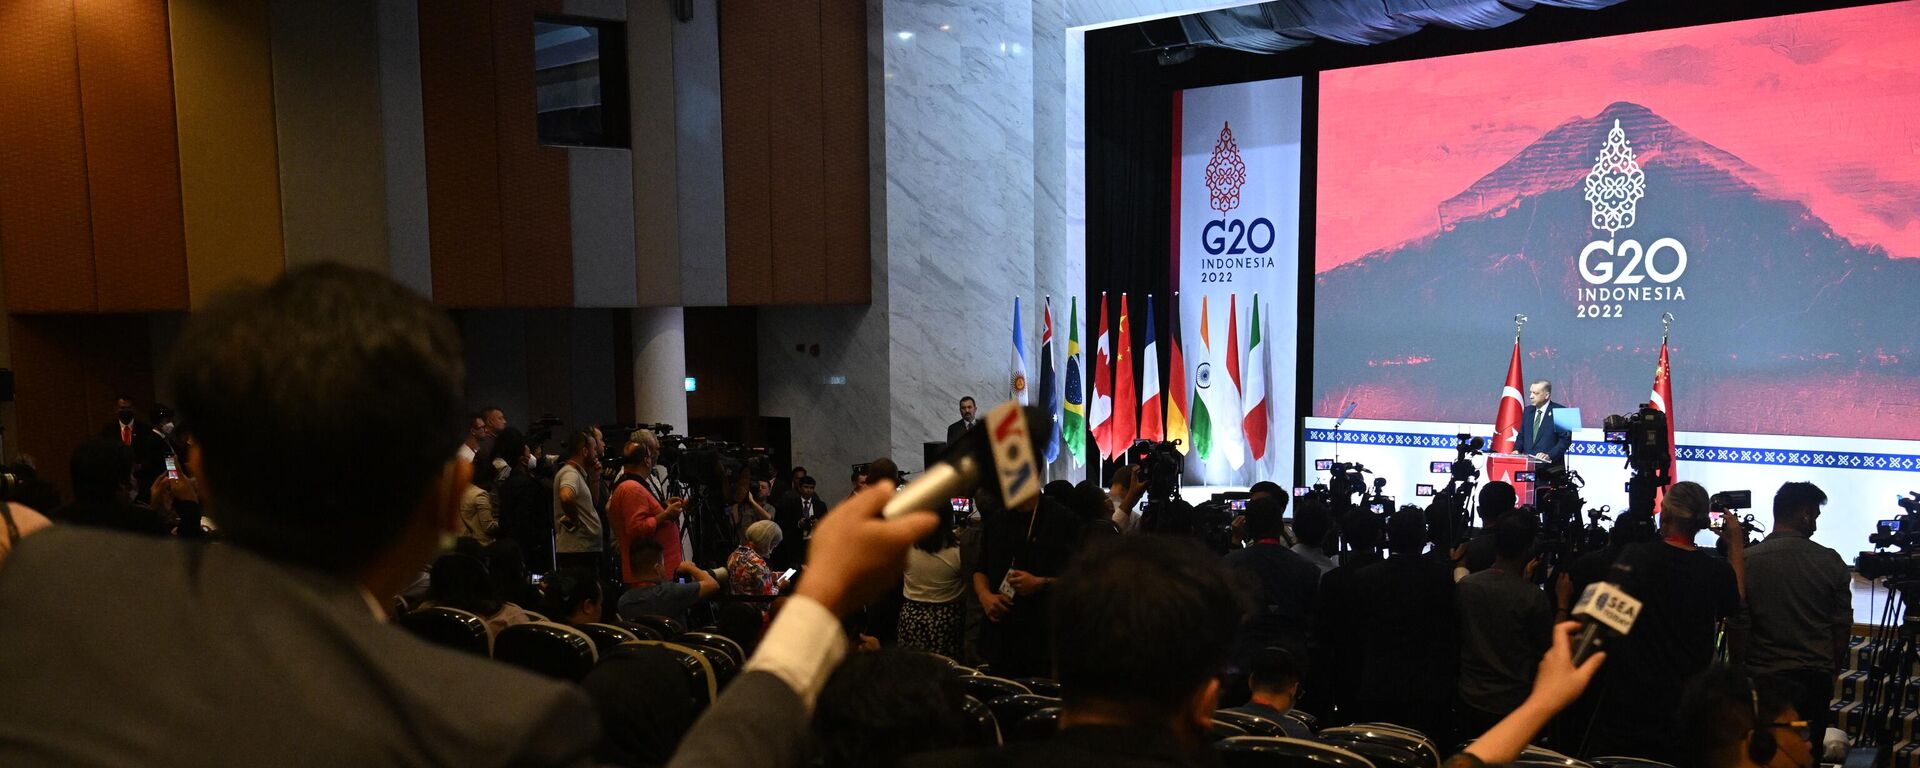 الرئيس التركي رجب طيب أردوغان يتحدث في مؤتمر صحفي خلال قمة مجموعة العشرين في بالي. يُعقد الاجتماع السابع عشر لرؤساء دول مجموعة العشرين (G20) في جزيرة بالي الإندونيسية يومي 15 و 16 نوفمبر. - سبوتنيك عربي, 1920, 05.01.2023